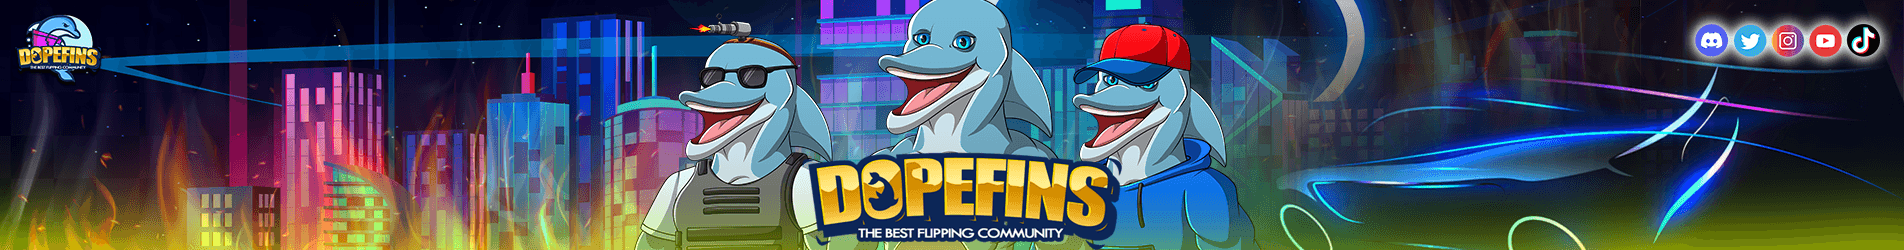 Dopefins banner